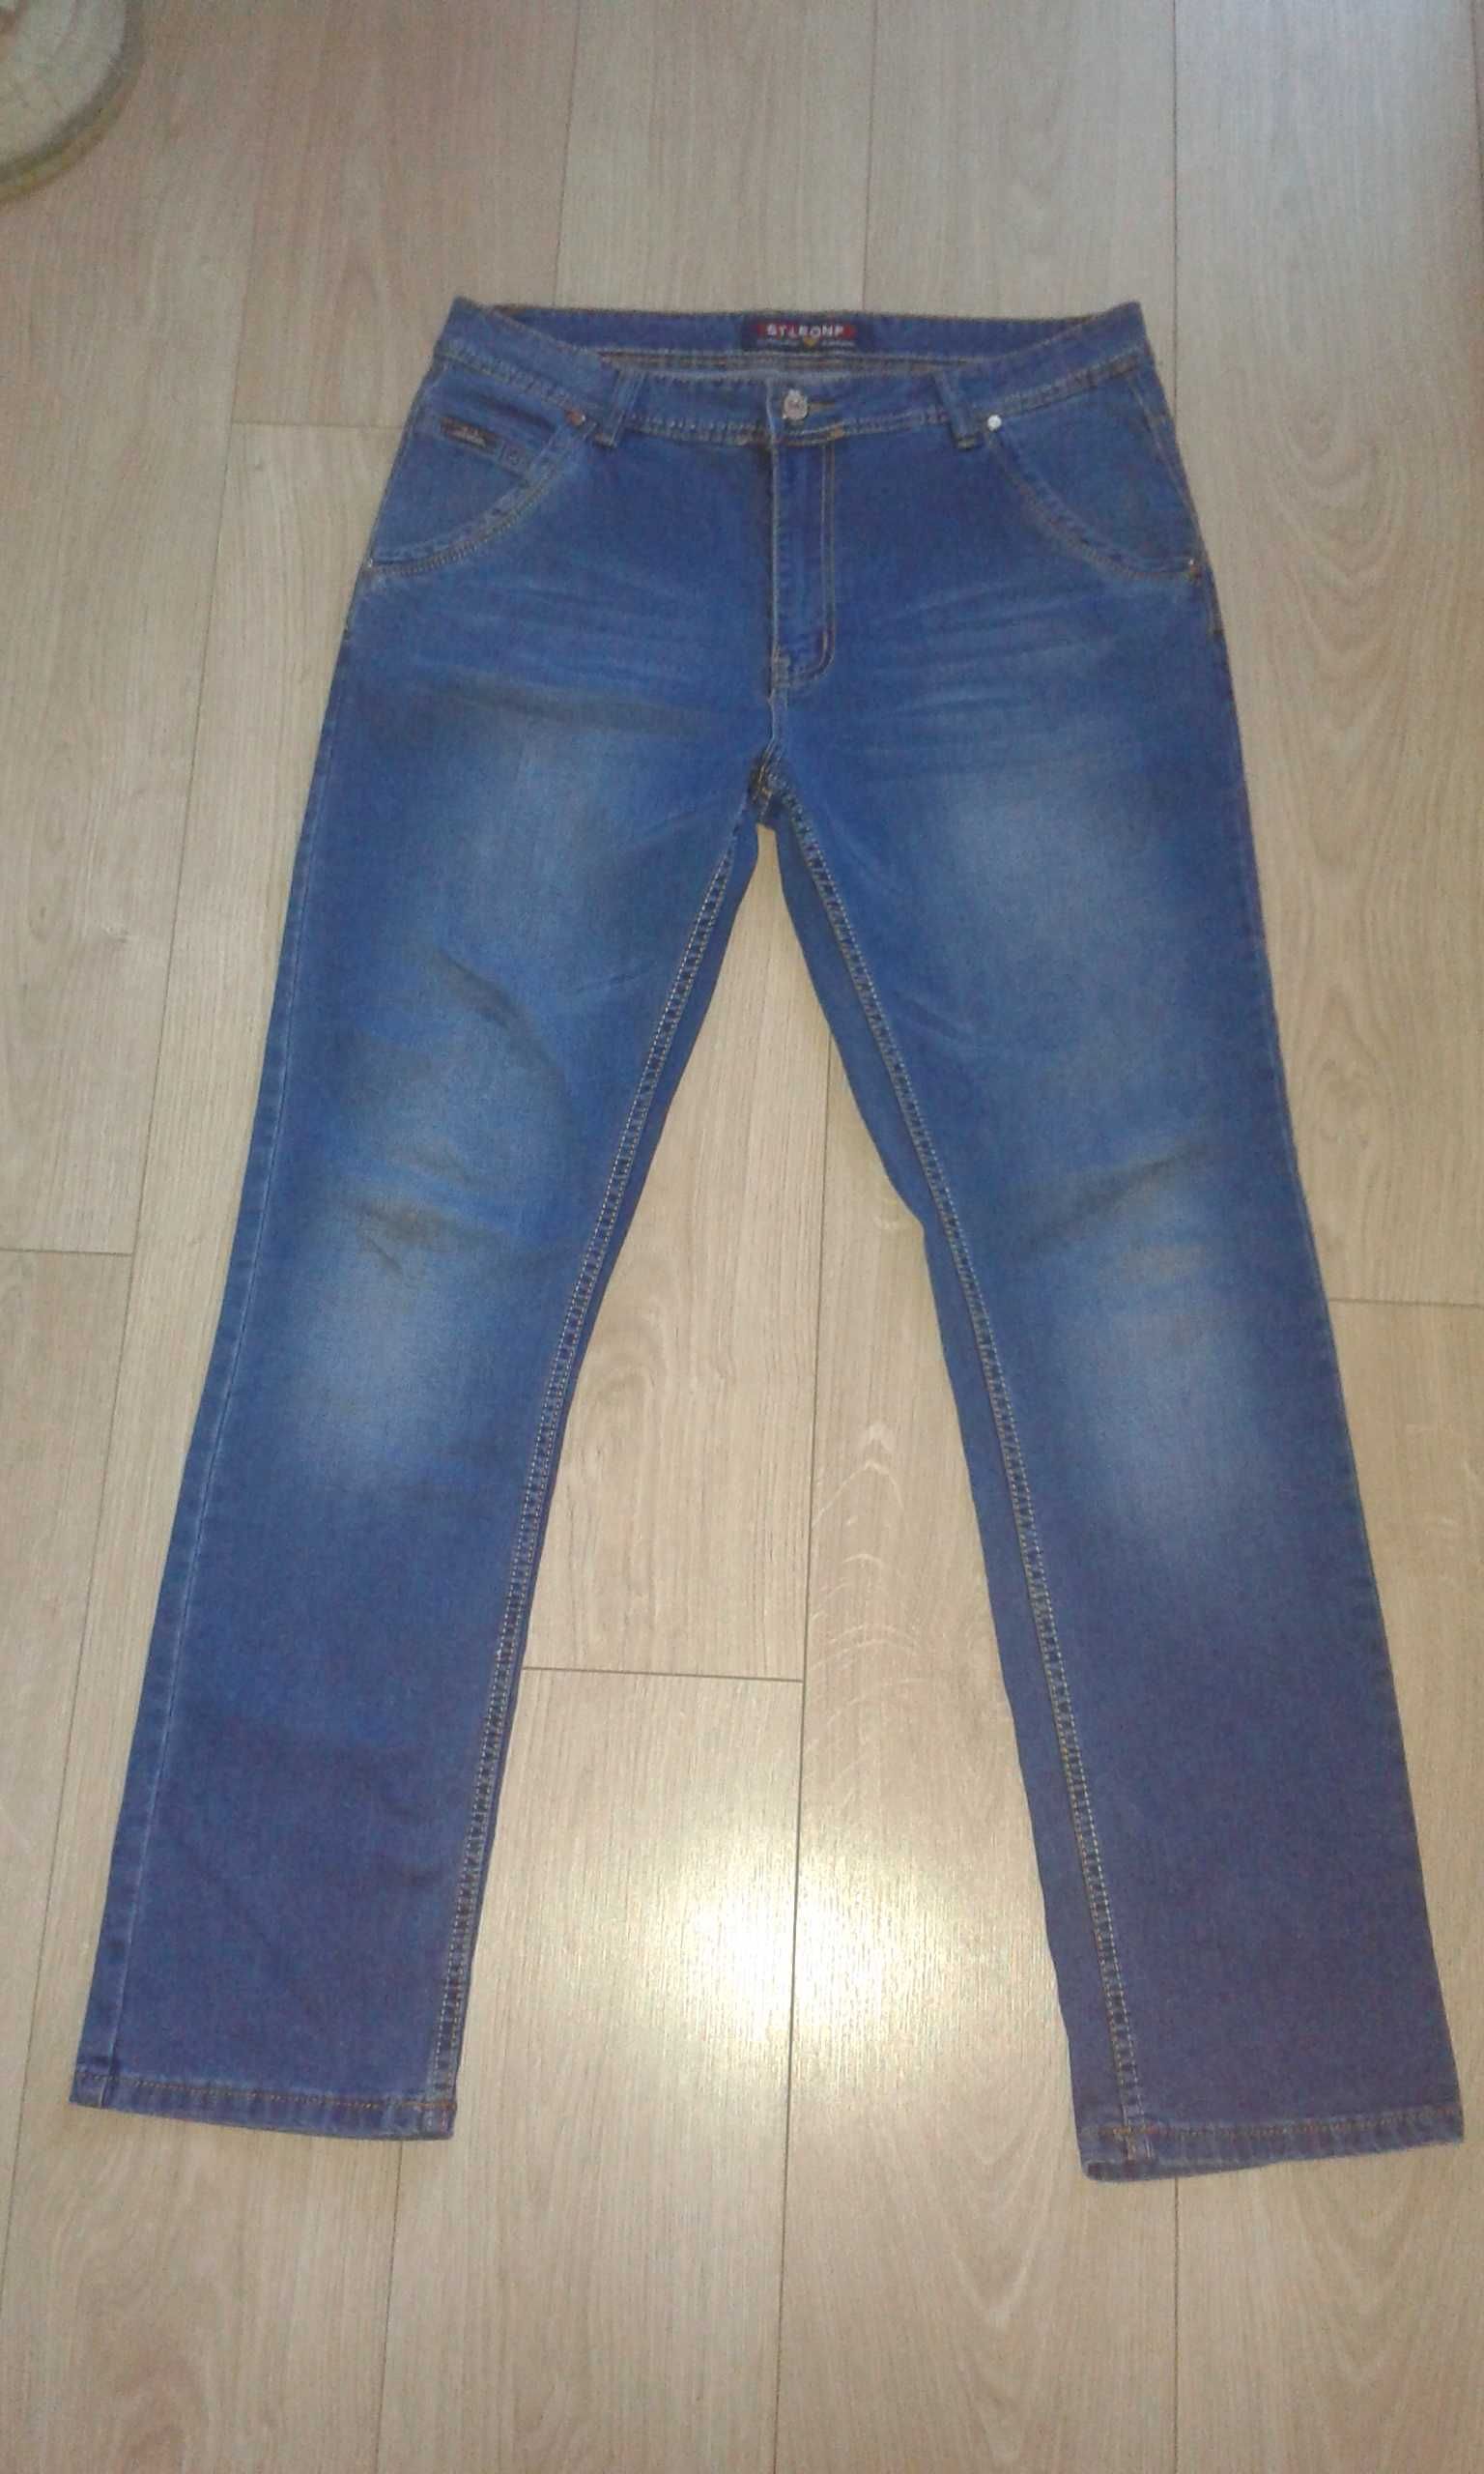 L/40 Spodnie jeansowe dżinsy męskie granatowe